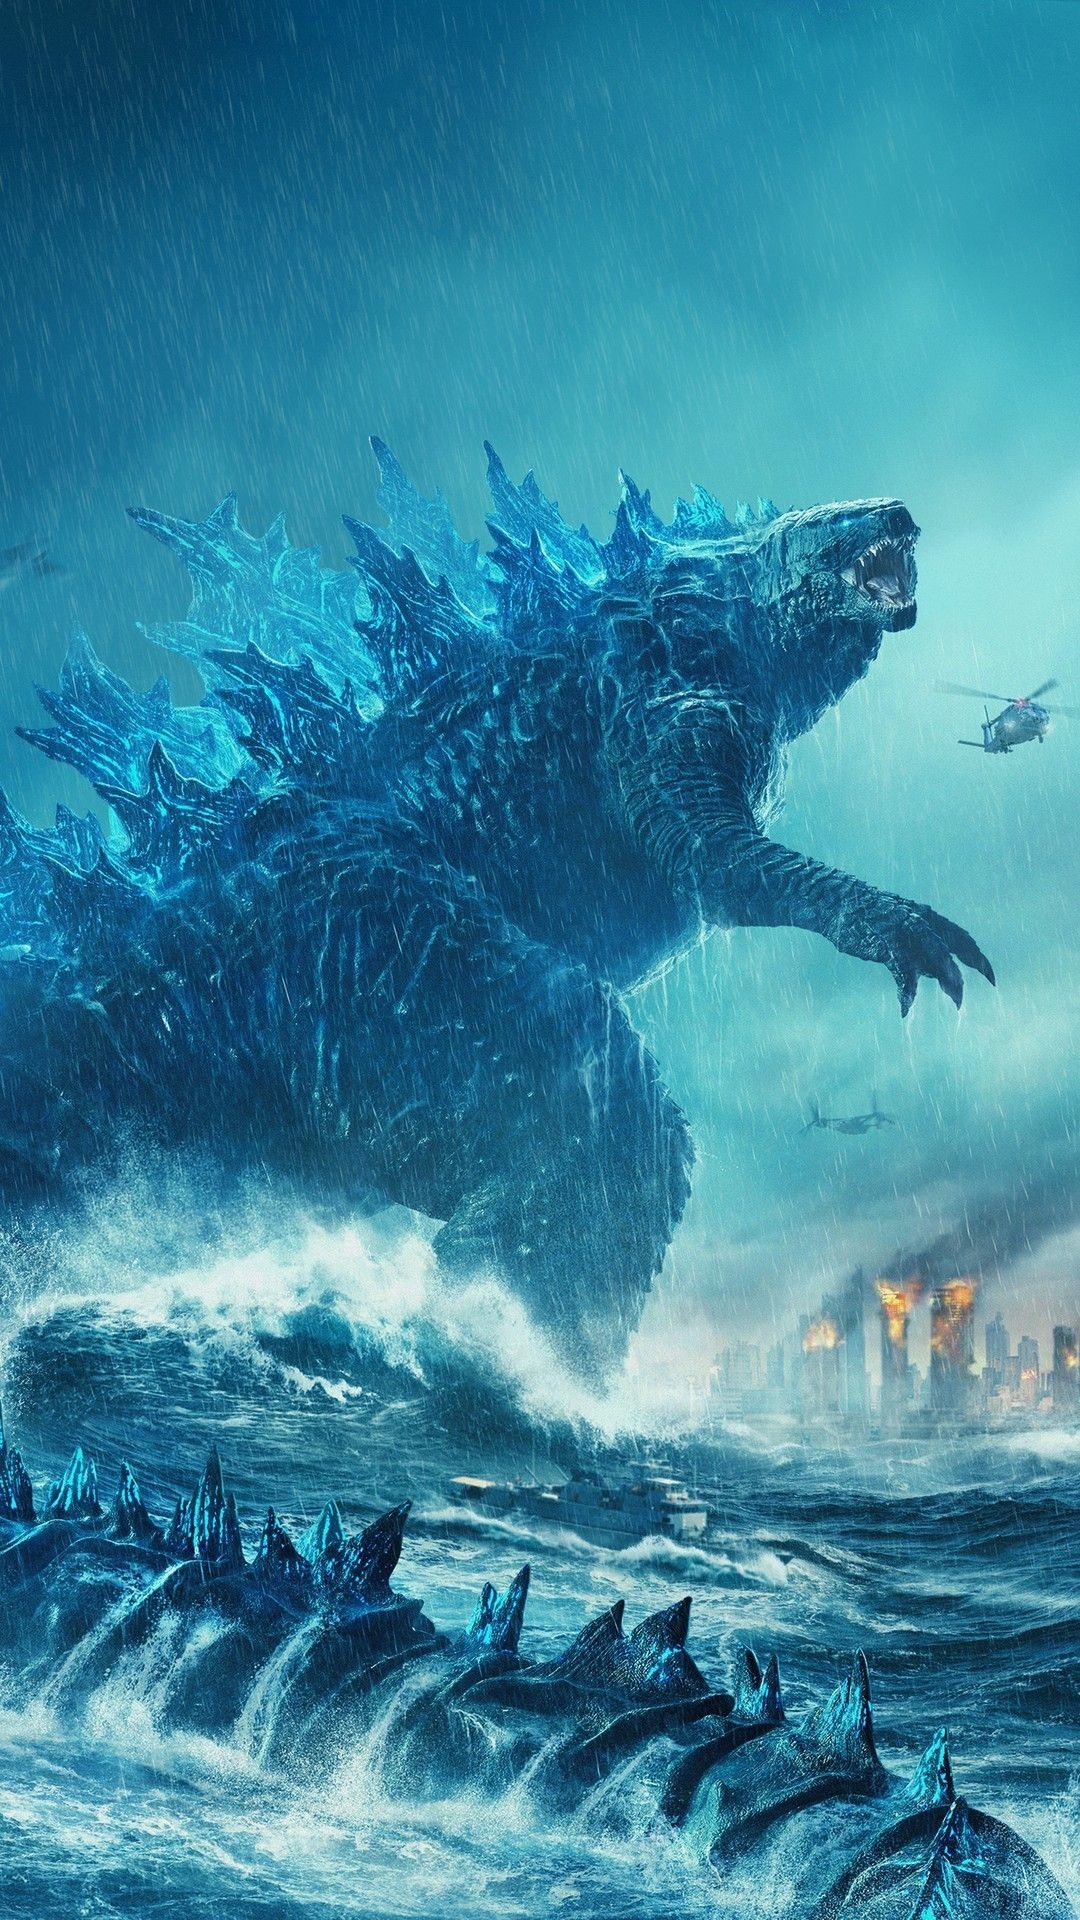 Godzilla Wallpaper (best Godzilla Wallpaper and image) on WallpaperChat